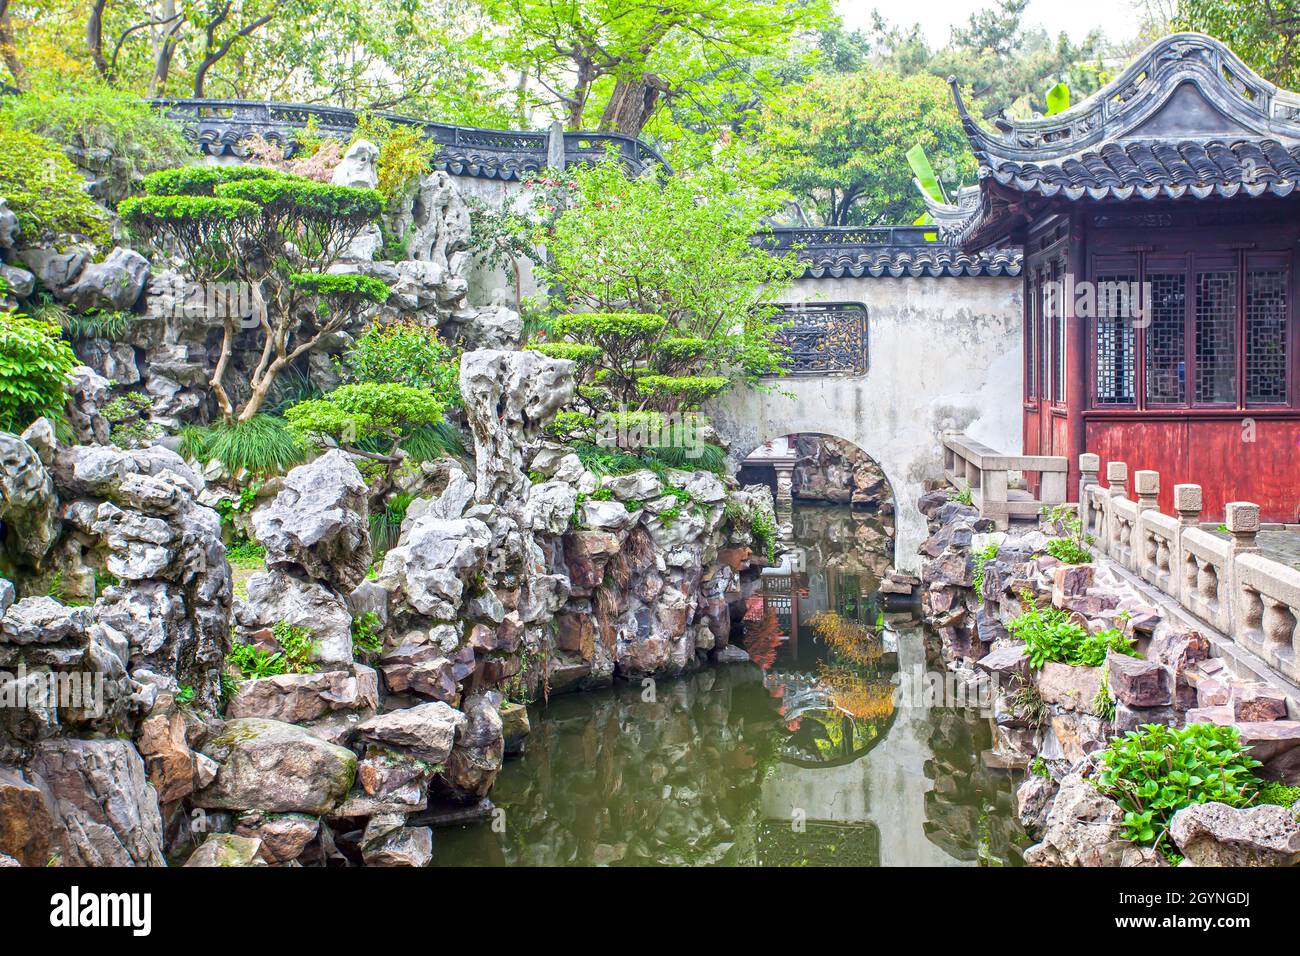 Yu Yuan Garden in Shanghai, China Stock Photo